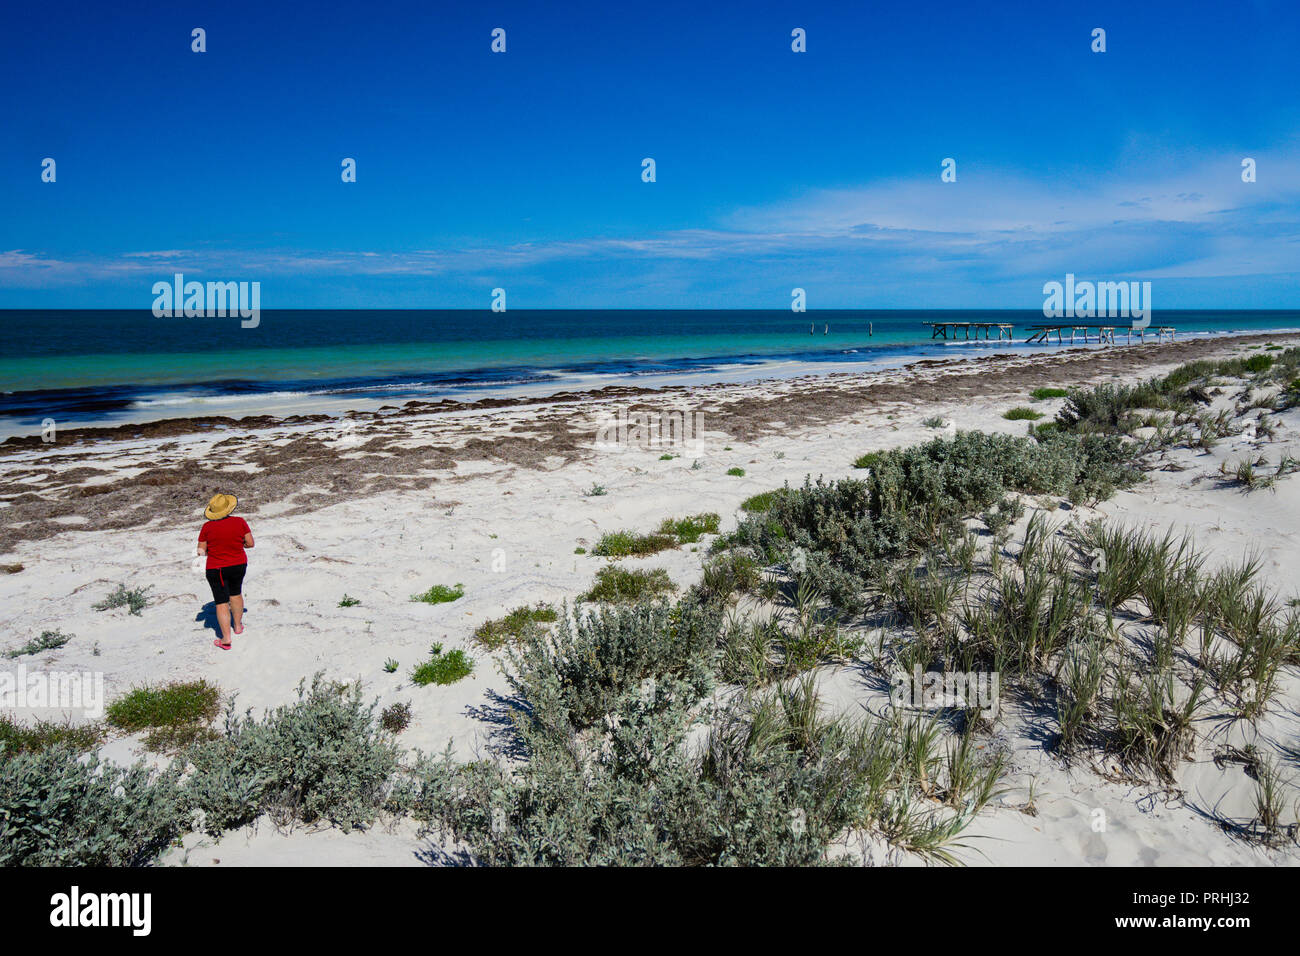 Plage de sable blanc sur la côte de l'océan au sud de l'Australie Occidentale Eucla Banque D'Images